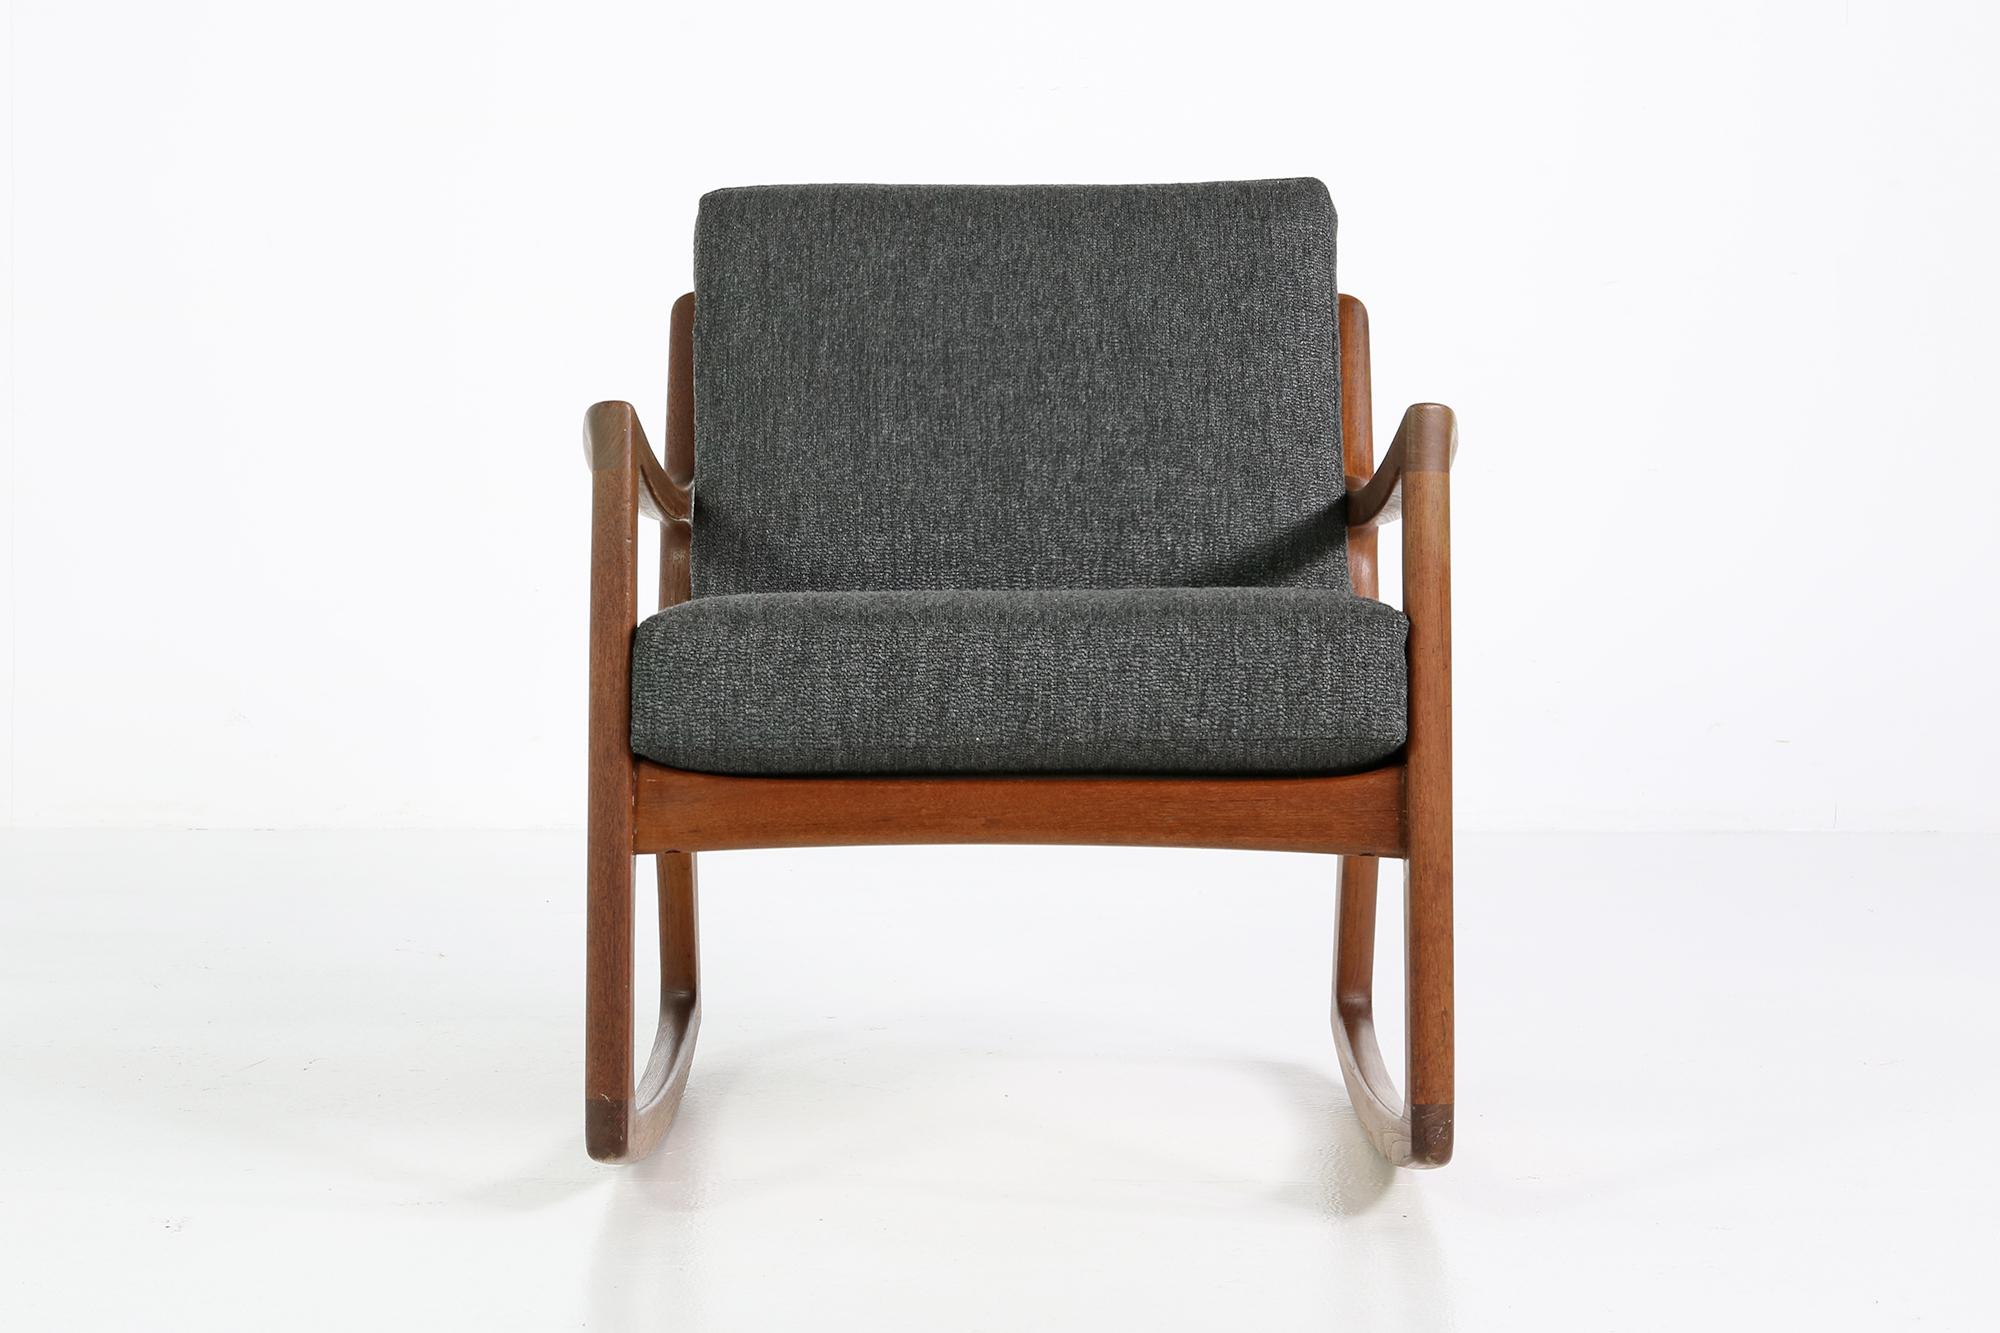 Mid-Century Modern 1960s Danish modern Rocking Chair 'Senator' by Ole Wanscher, Midcentury Modern